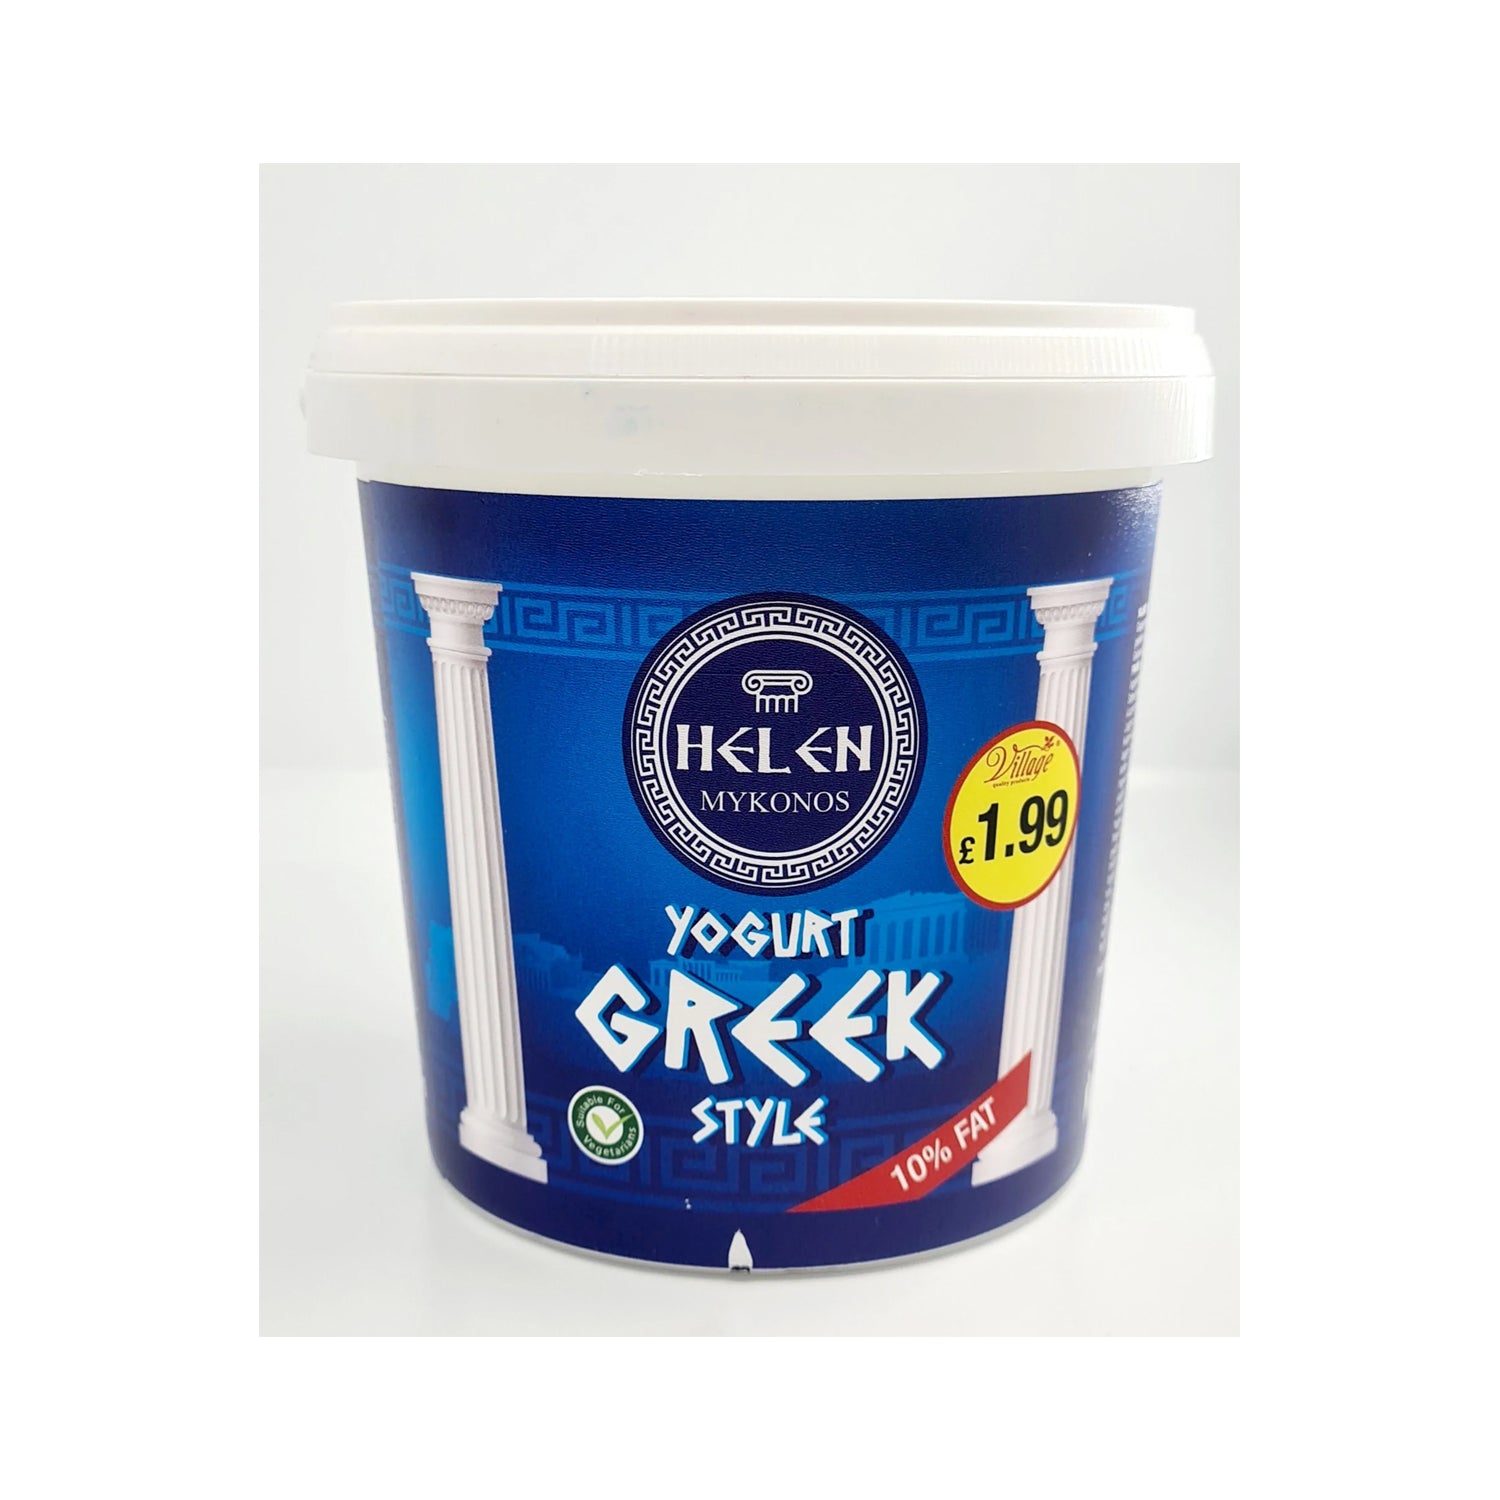 Helen Yogurt Greek Style 1kg